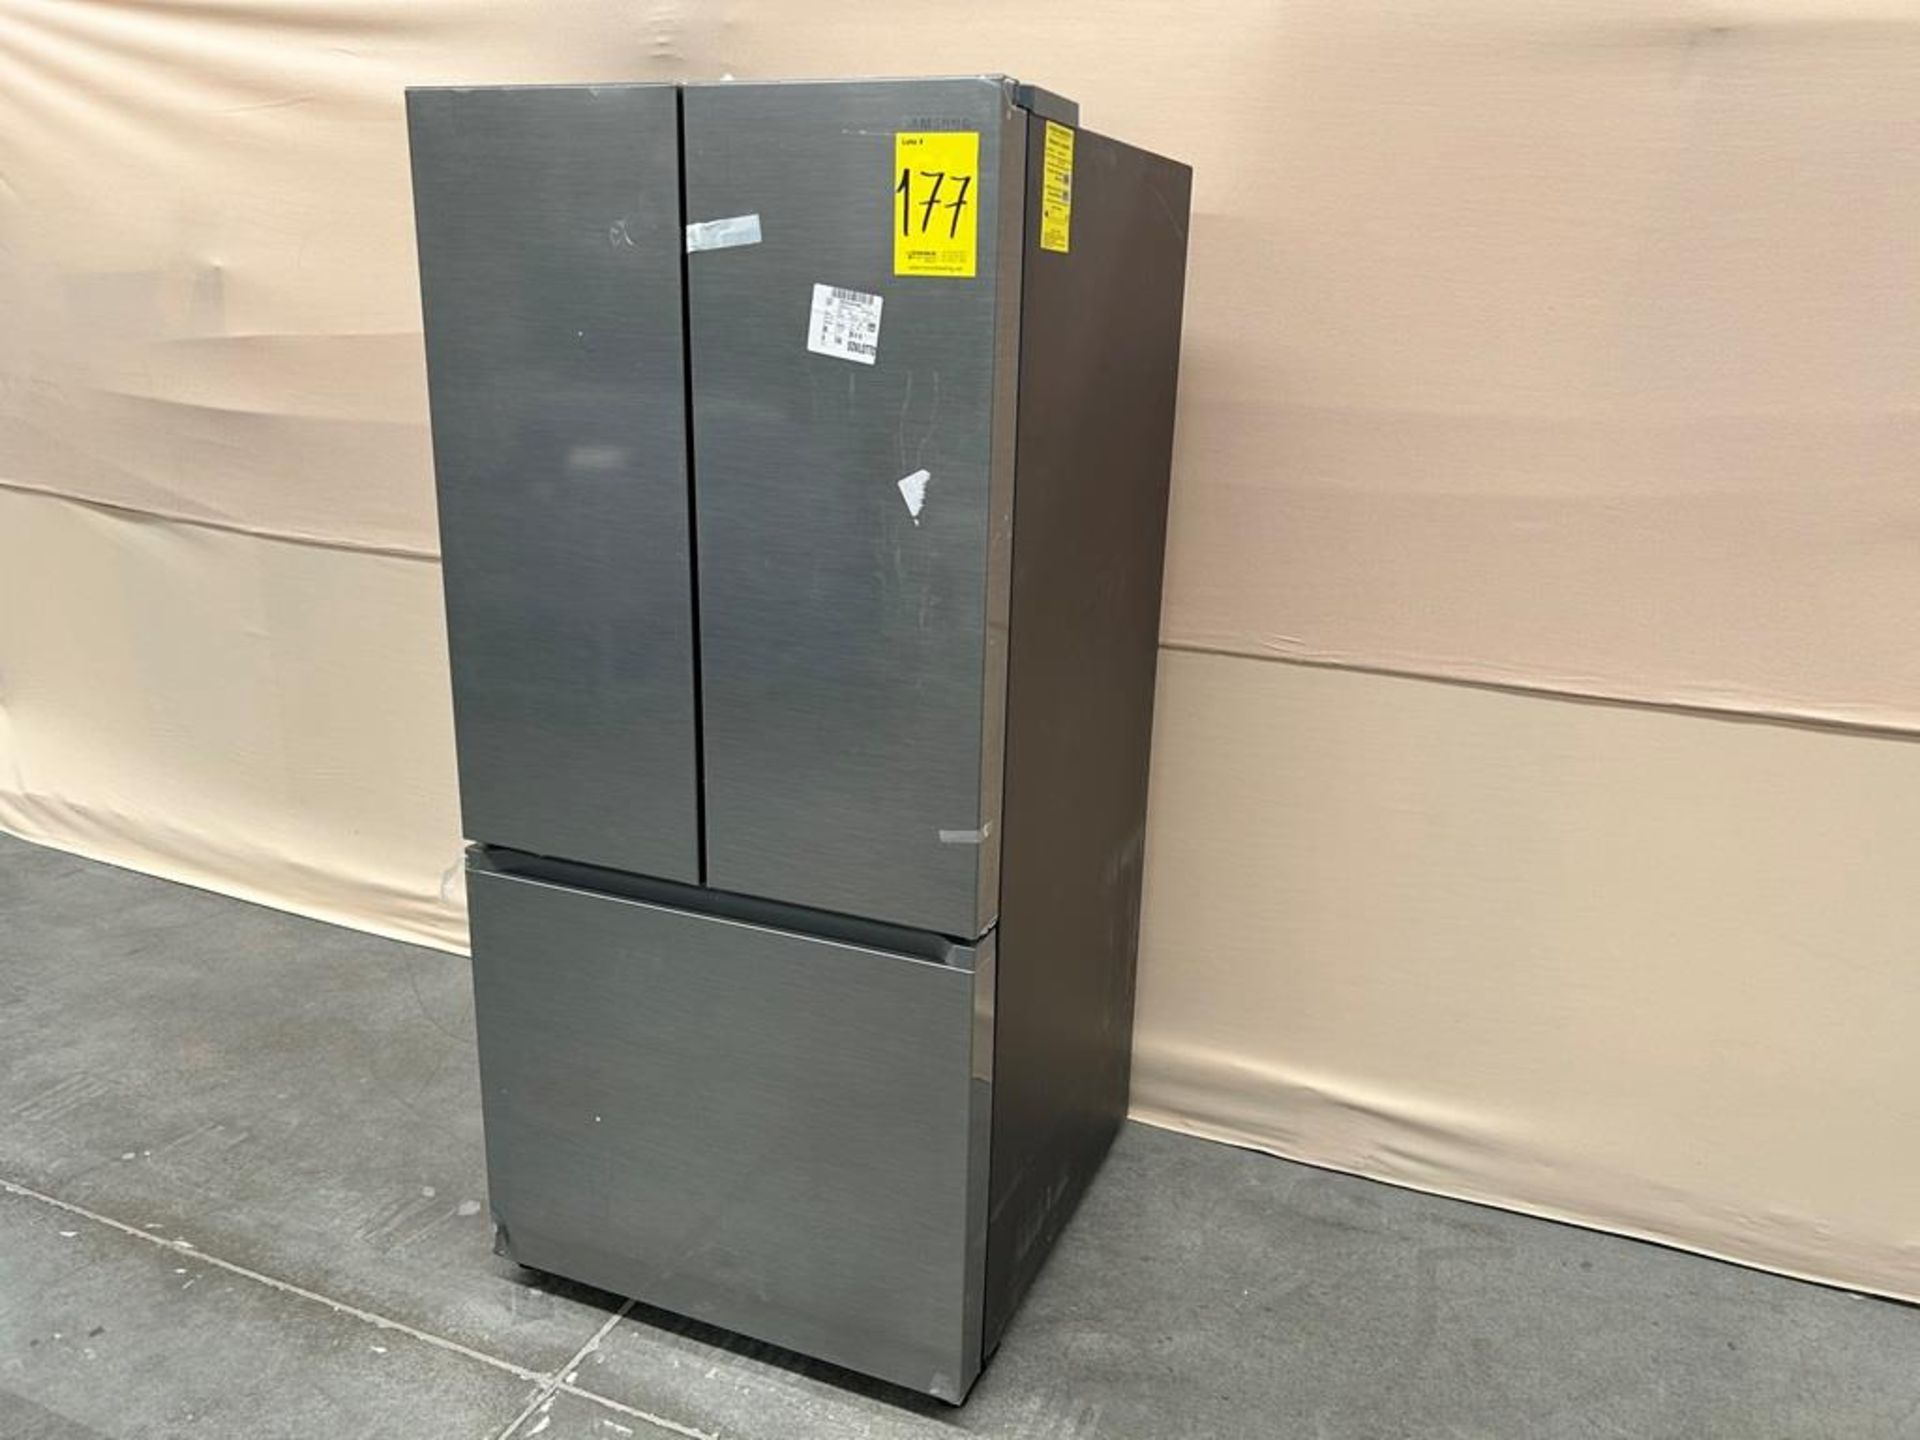 Refrigerador Marca SAMSUNG, Modelo RF25C5151S9, Serie 01154Z, Color GRIS (Equipo de devolución) - Image 2 of 8